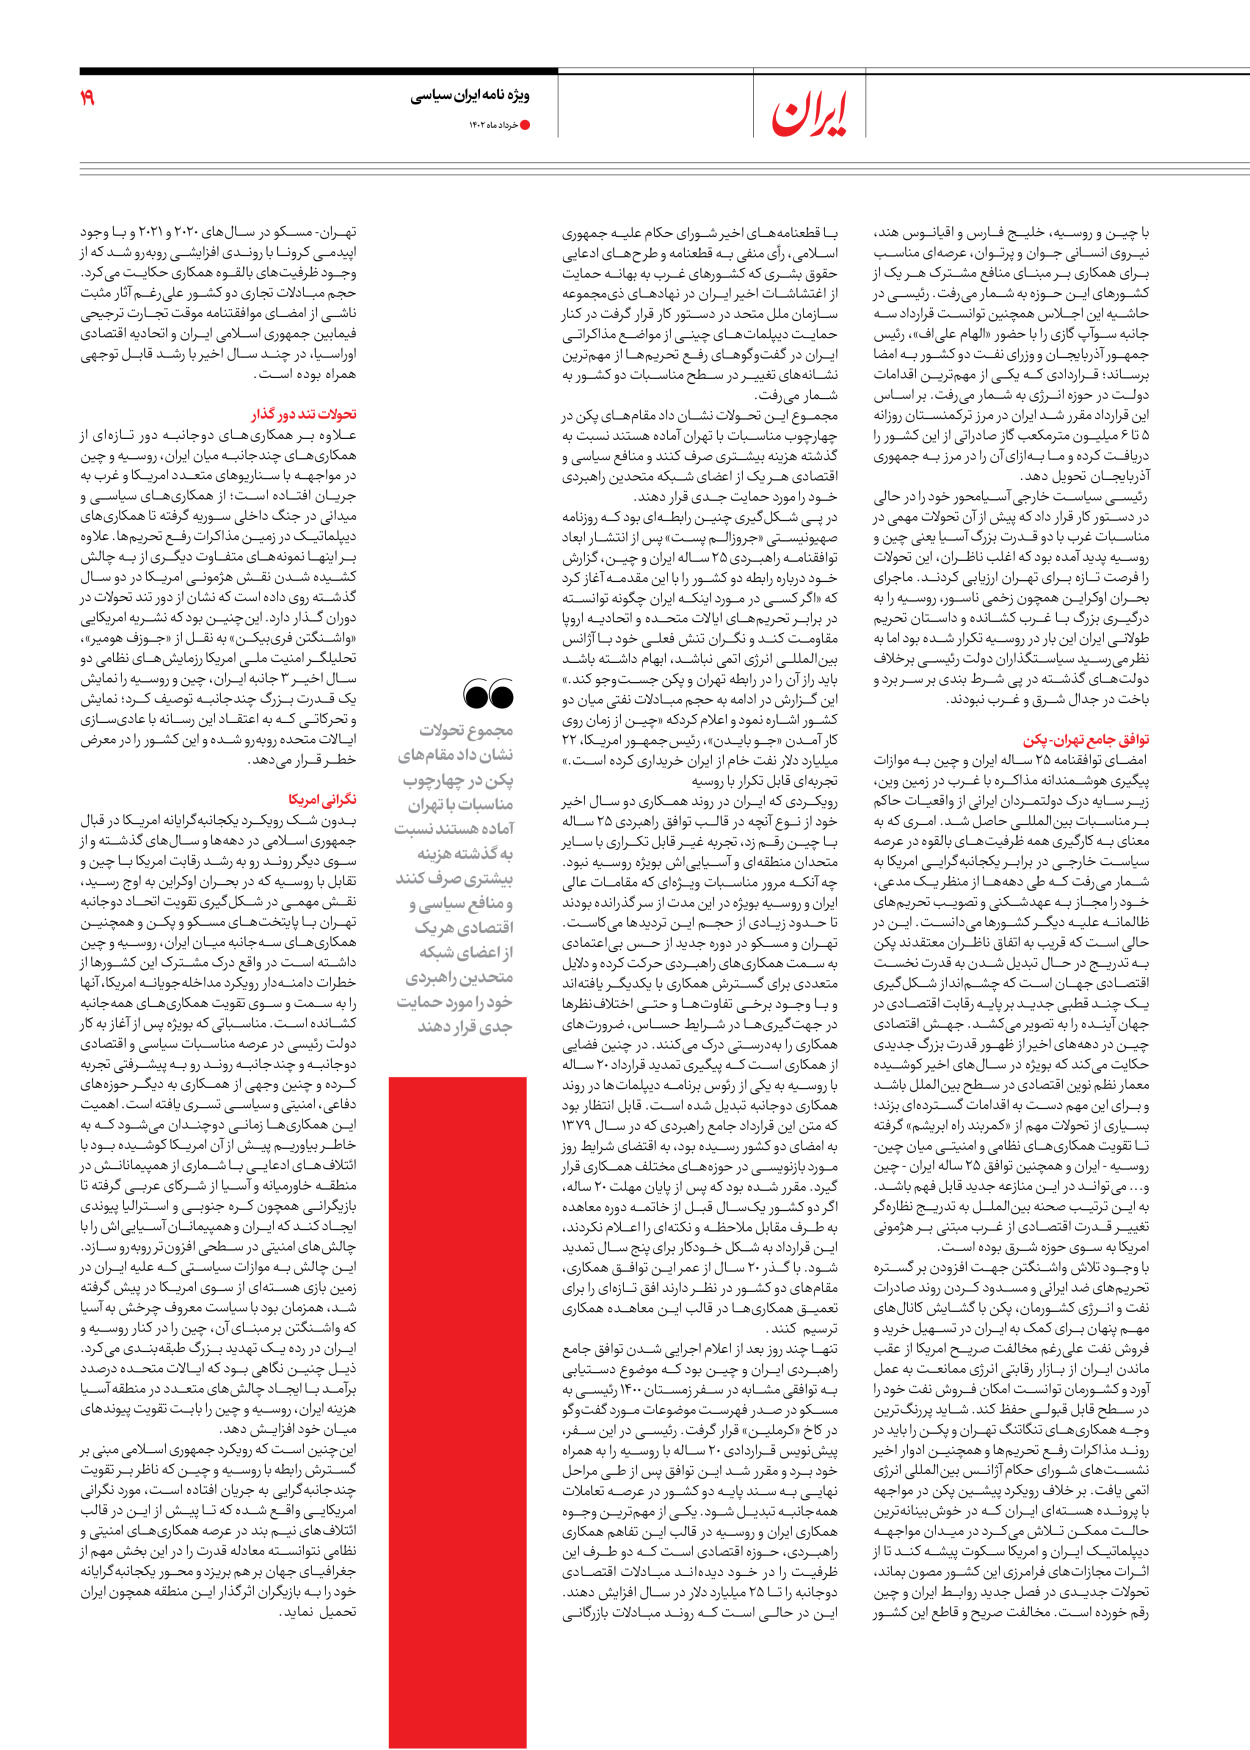 روزنامه ایران - ویژه نامه ویژه سالگرد انتخابات ریاست جمهوری - ۲۸ خرداد ۱۴۰۲ - صفحه ۱۹